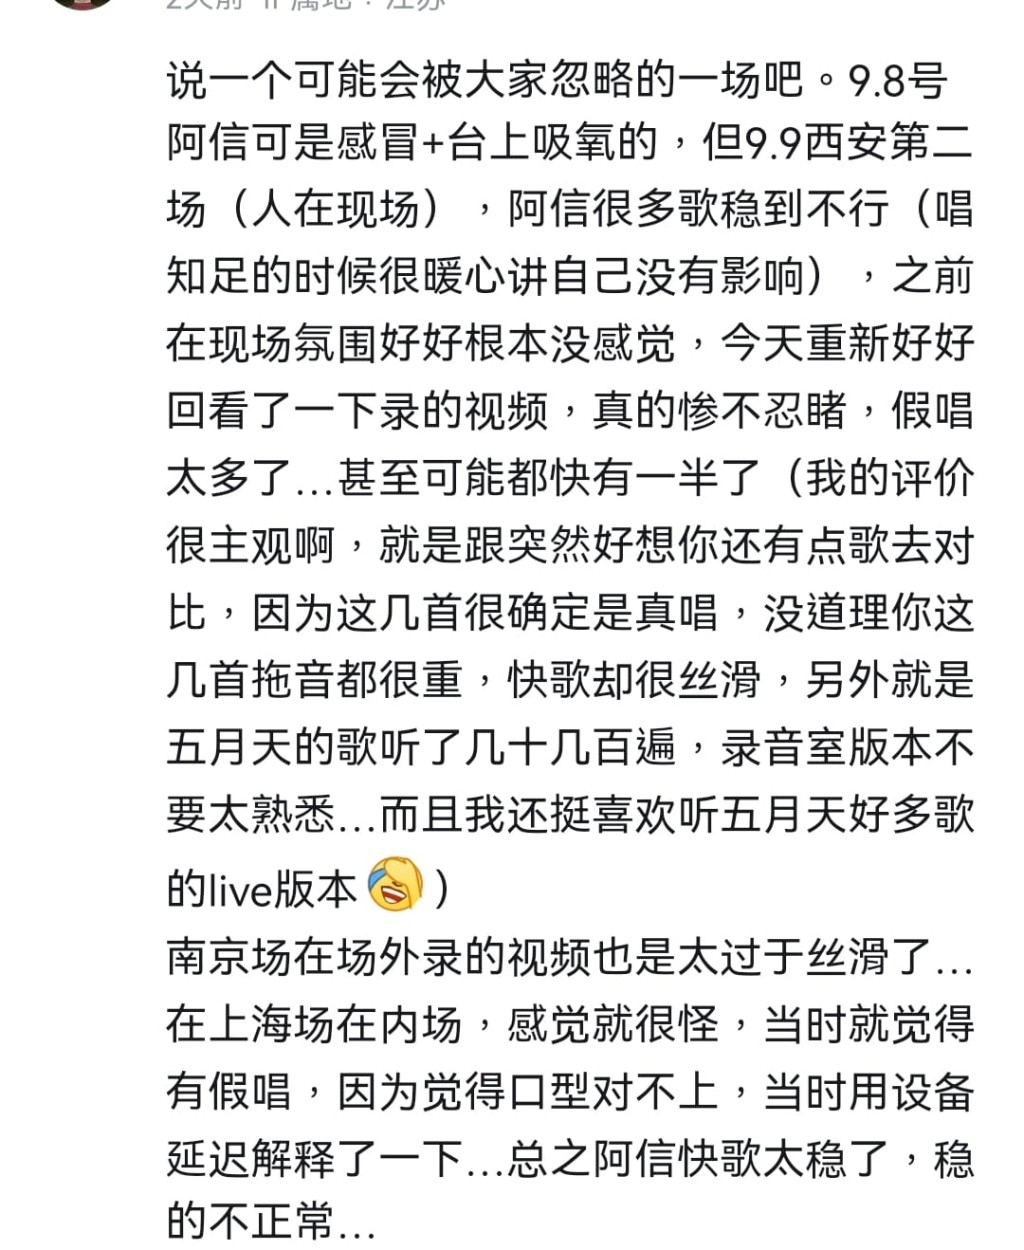 上海場歌迷亦現身表示阿信唱快歌「穩得不正常」、「口型對不上」。